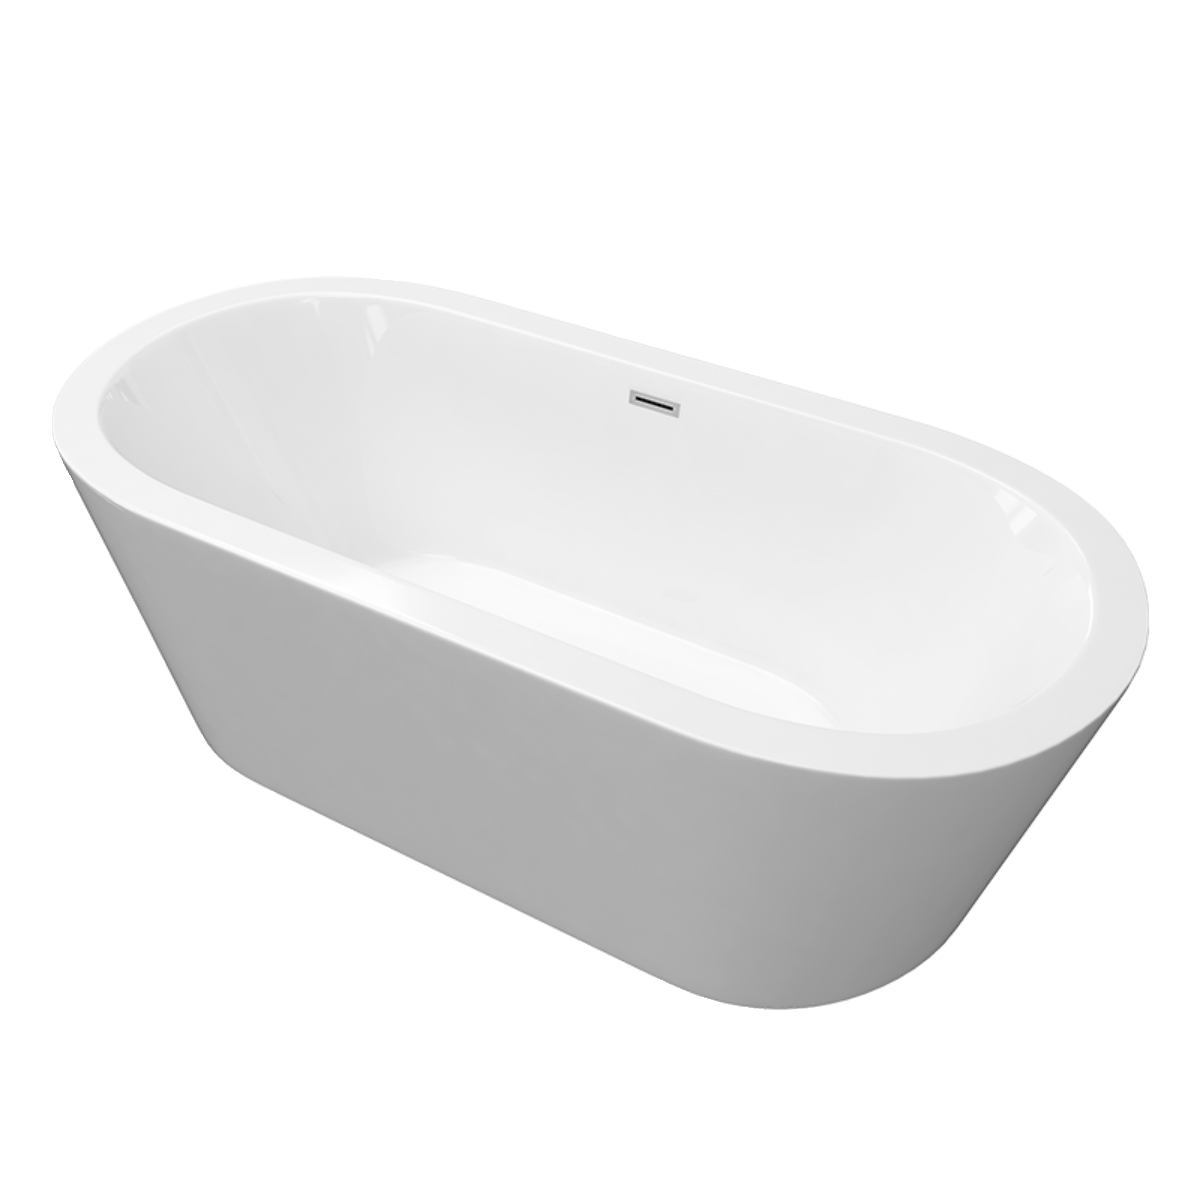 浴缸家用小户型亚克力日式成人一体迷你坐式泡澡免安装独立式浴盆